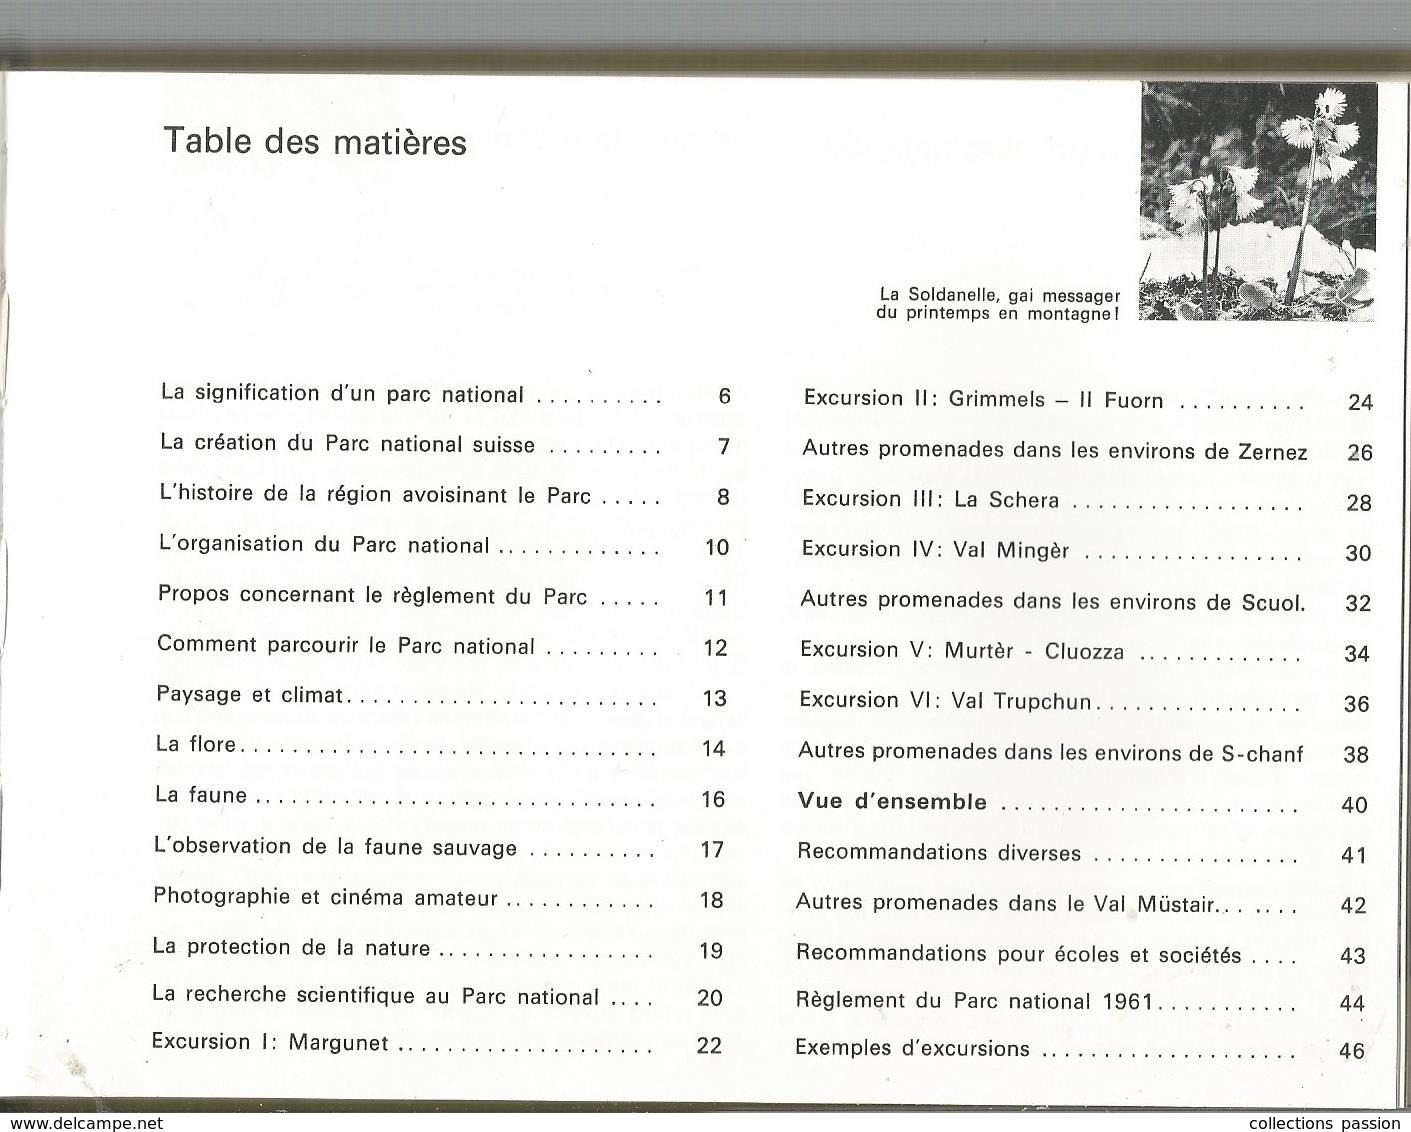 Régionalisme , SUISSE ,guide Officiel , LE PARC NATIONAL SUISSE, 47 Pages , 1974 , Photographies ,frais Fr 2.55 E - Zonder Classificatie